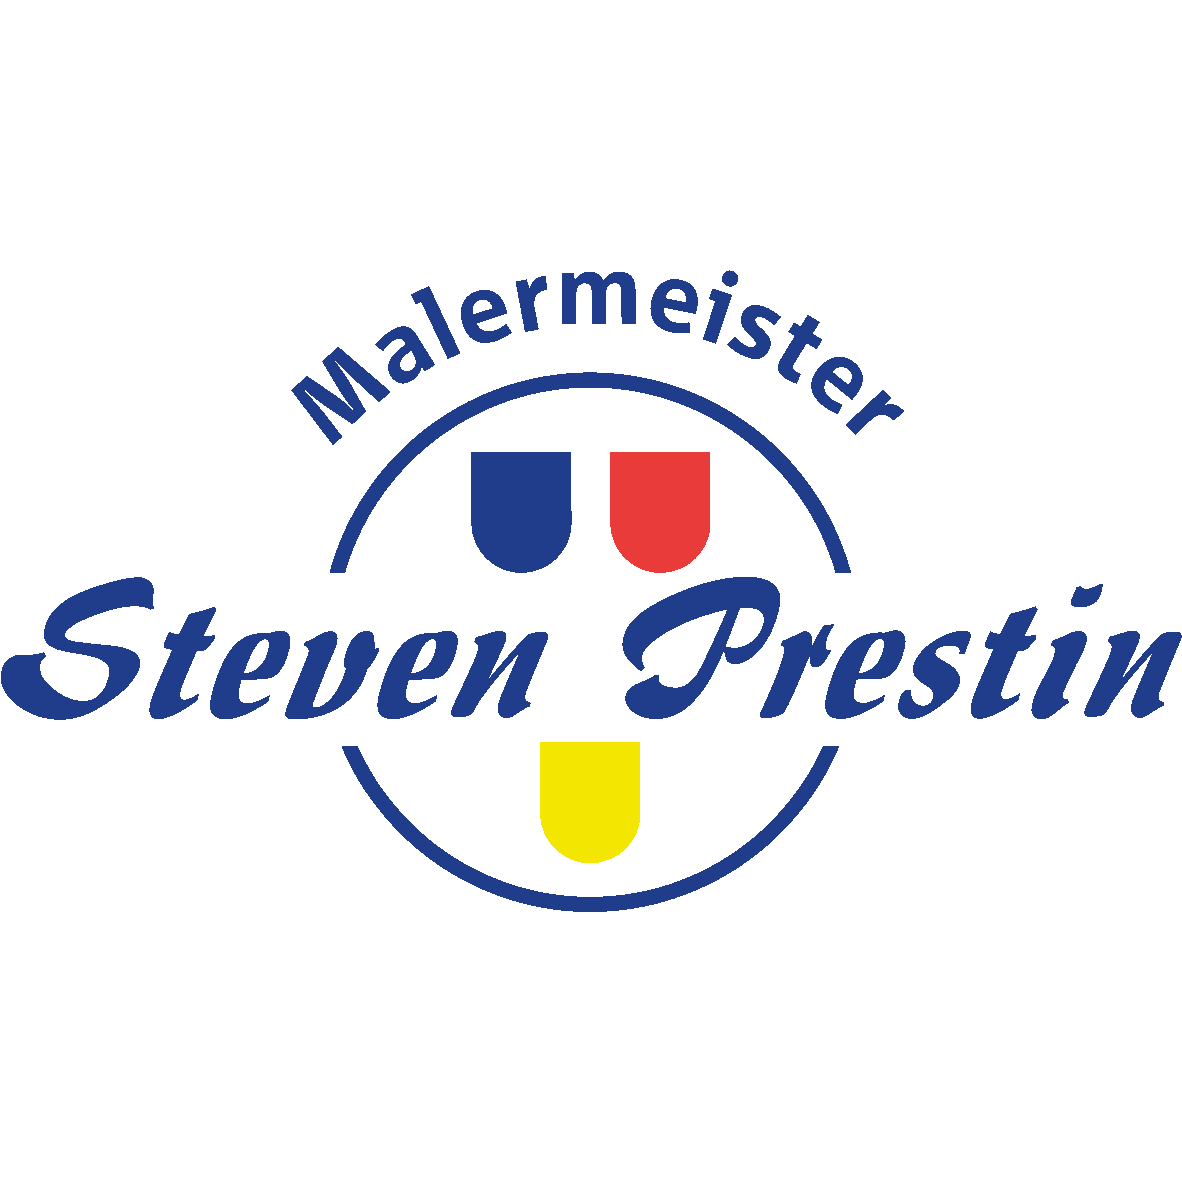 Logo Steven Prestin Malermeister